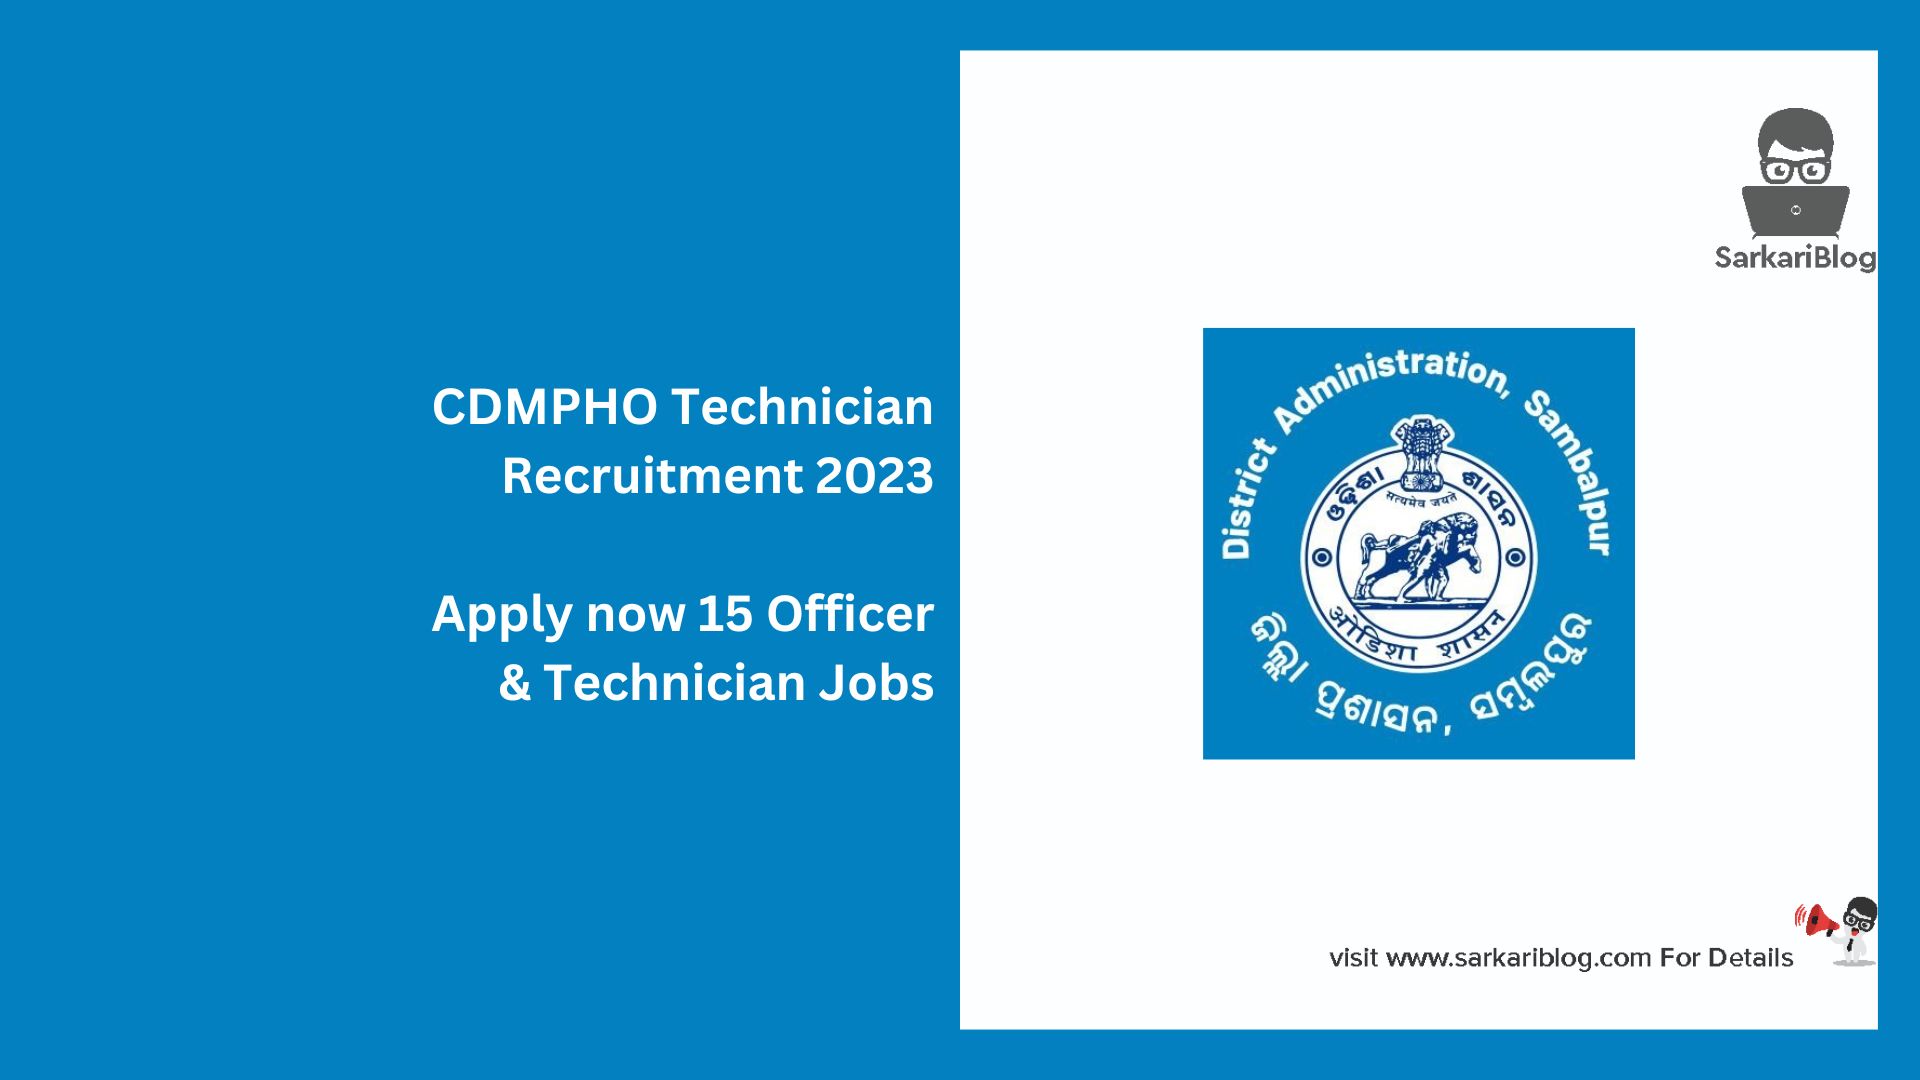 CDMPHO Technician Recruitment 2023